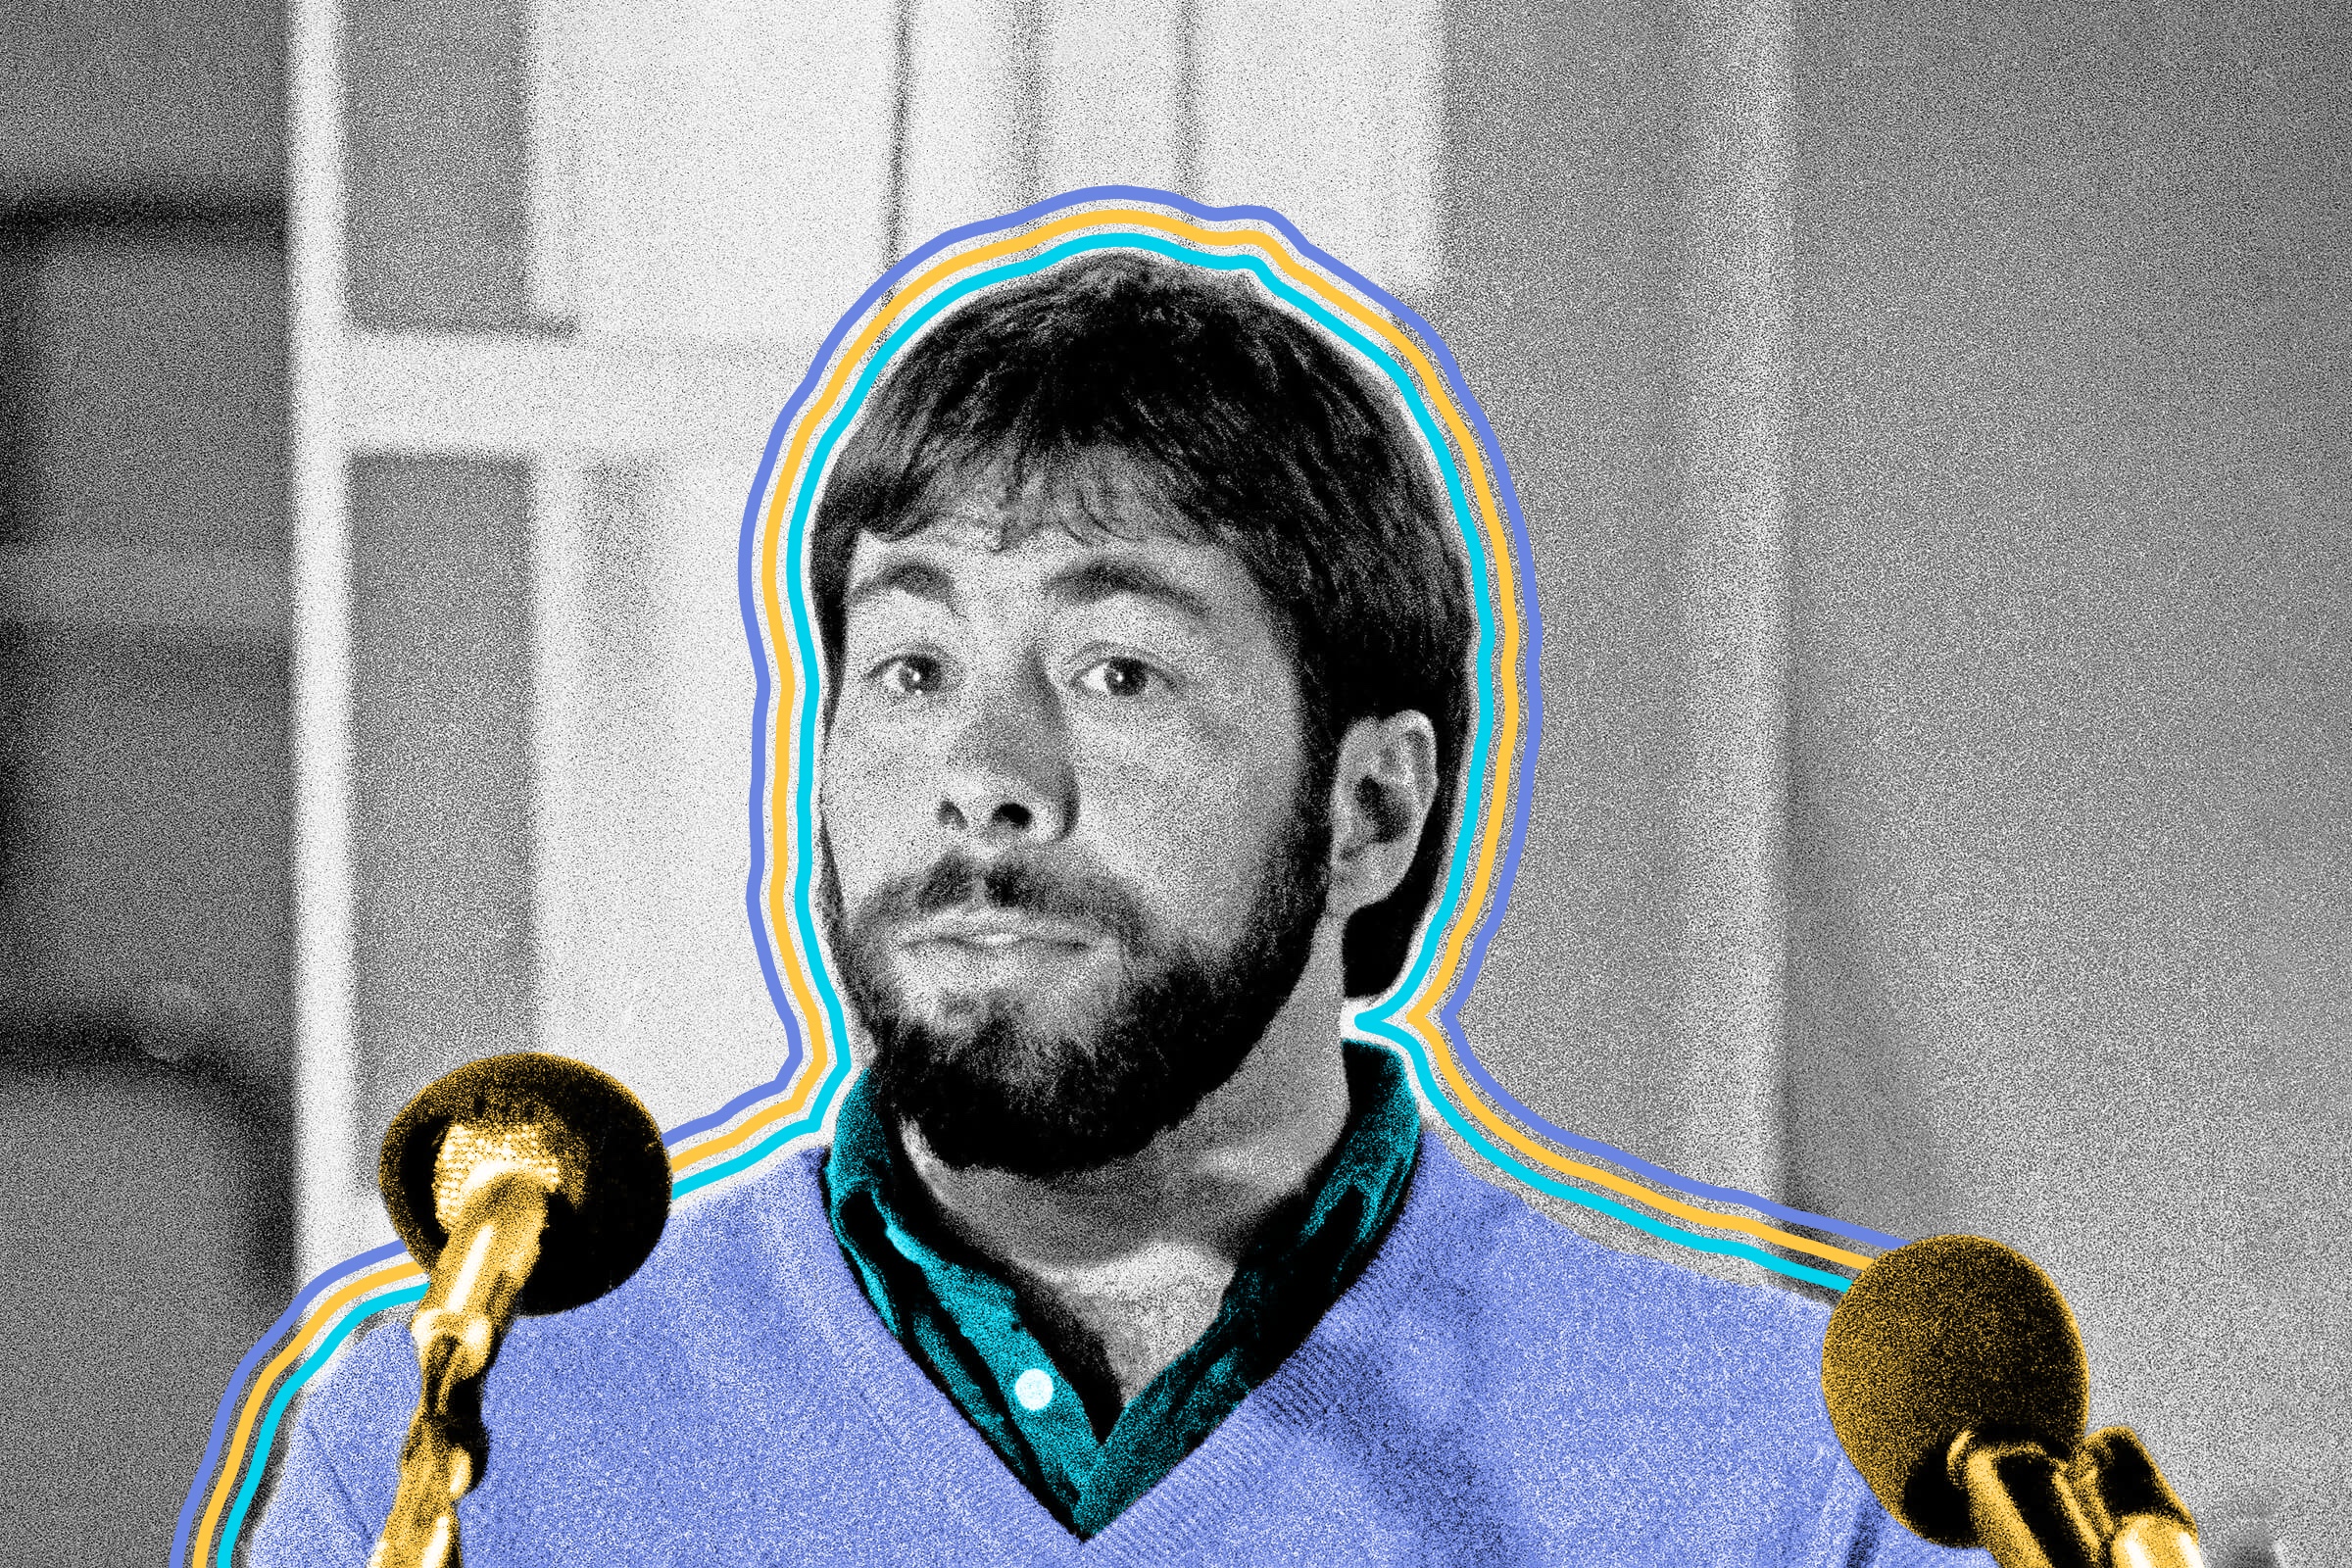 Apple co-founder Steve Wozniak once prank-called the Vatican, pretending to be Henry Kissinger asking for the pope.